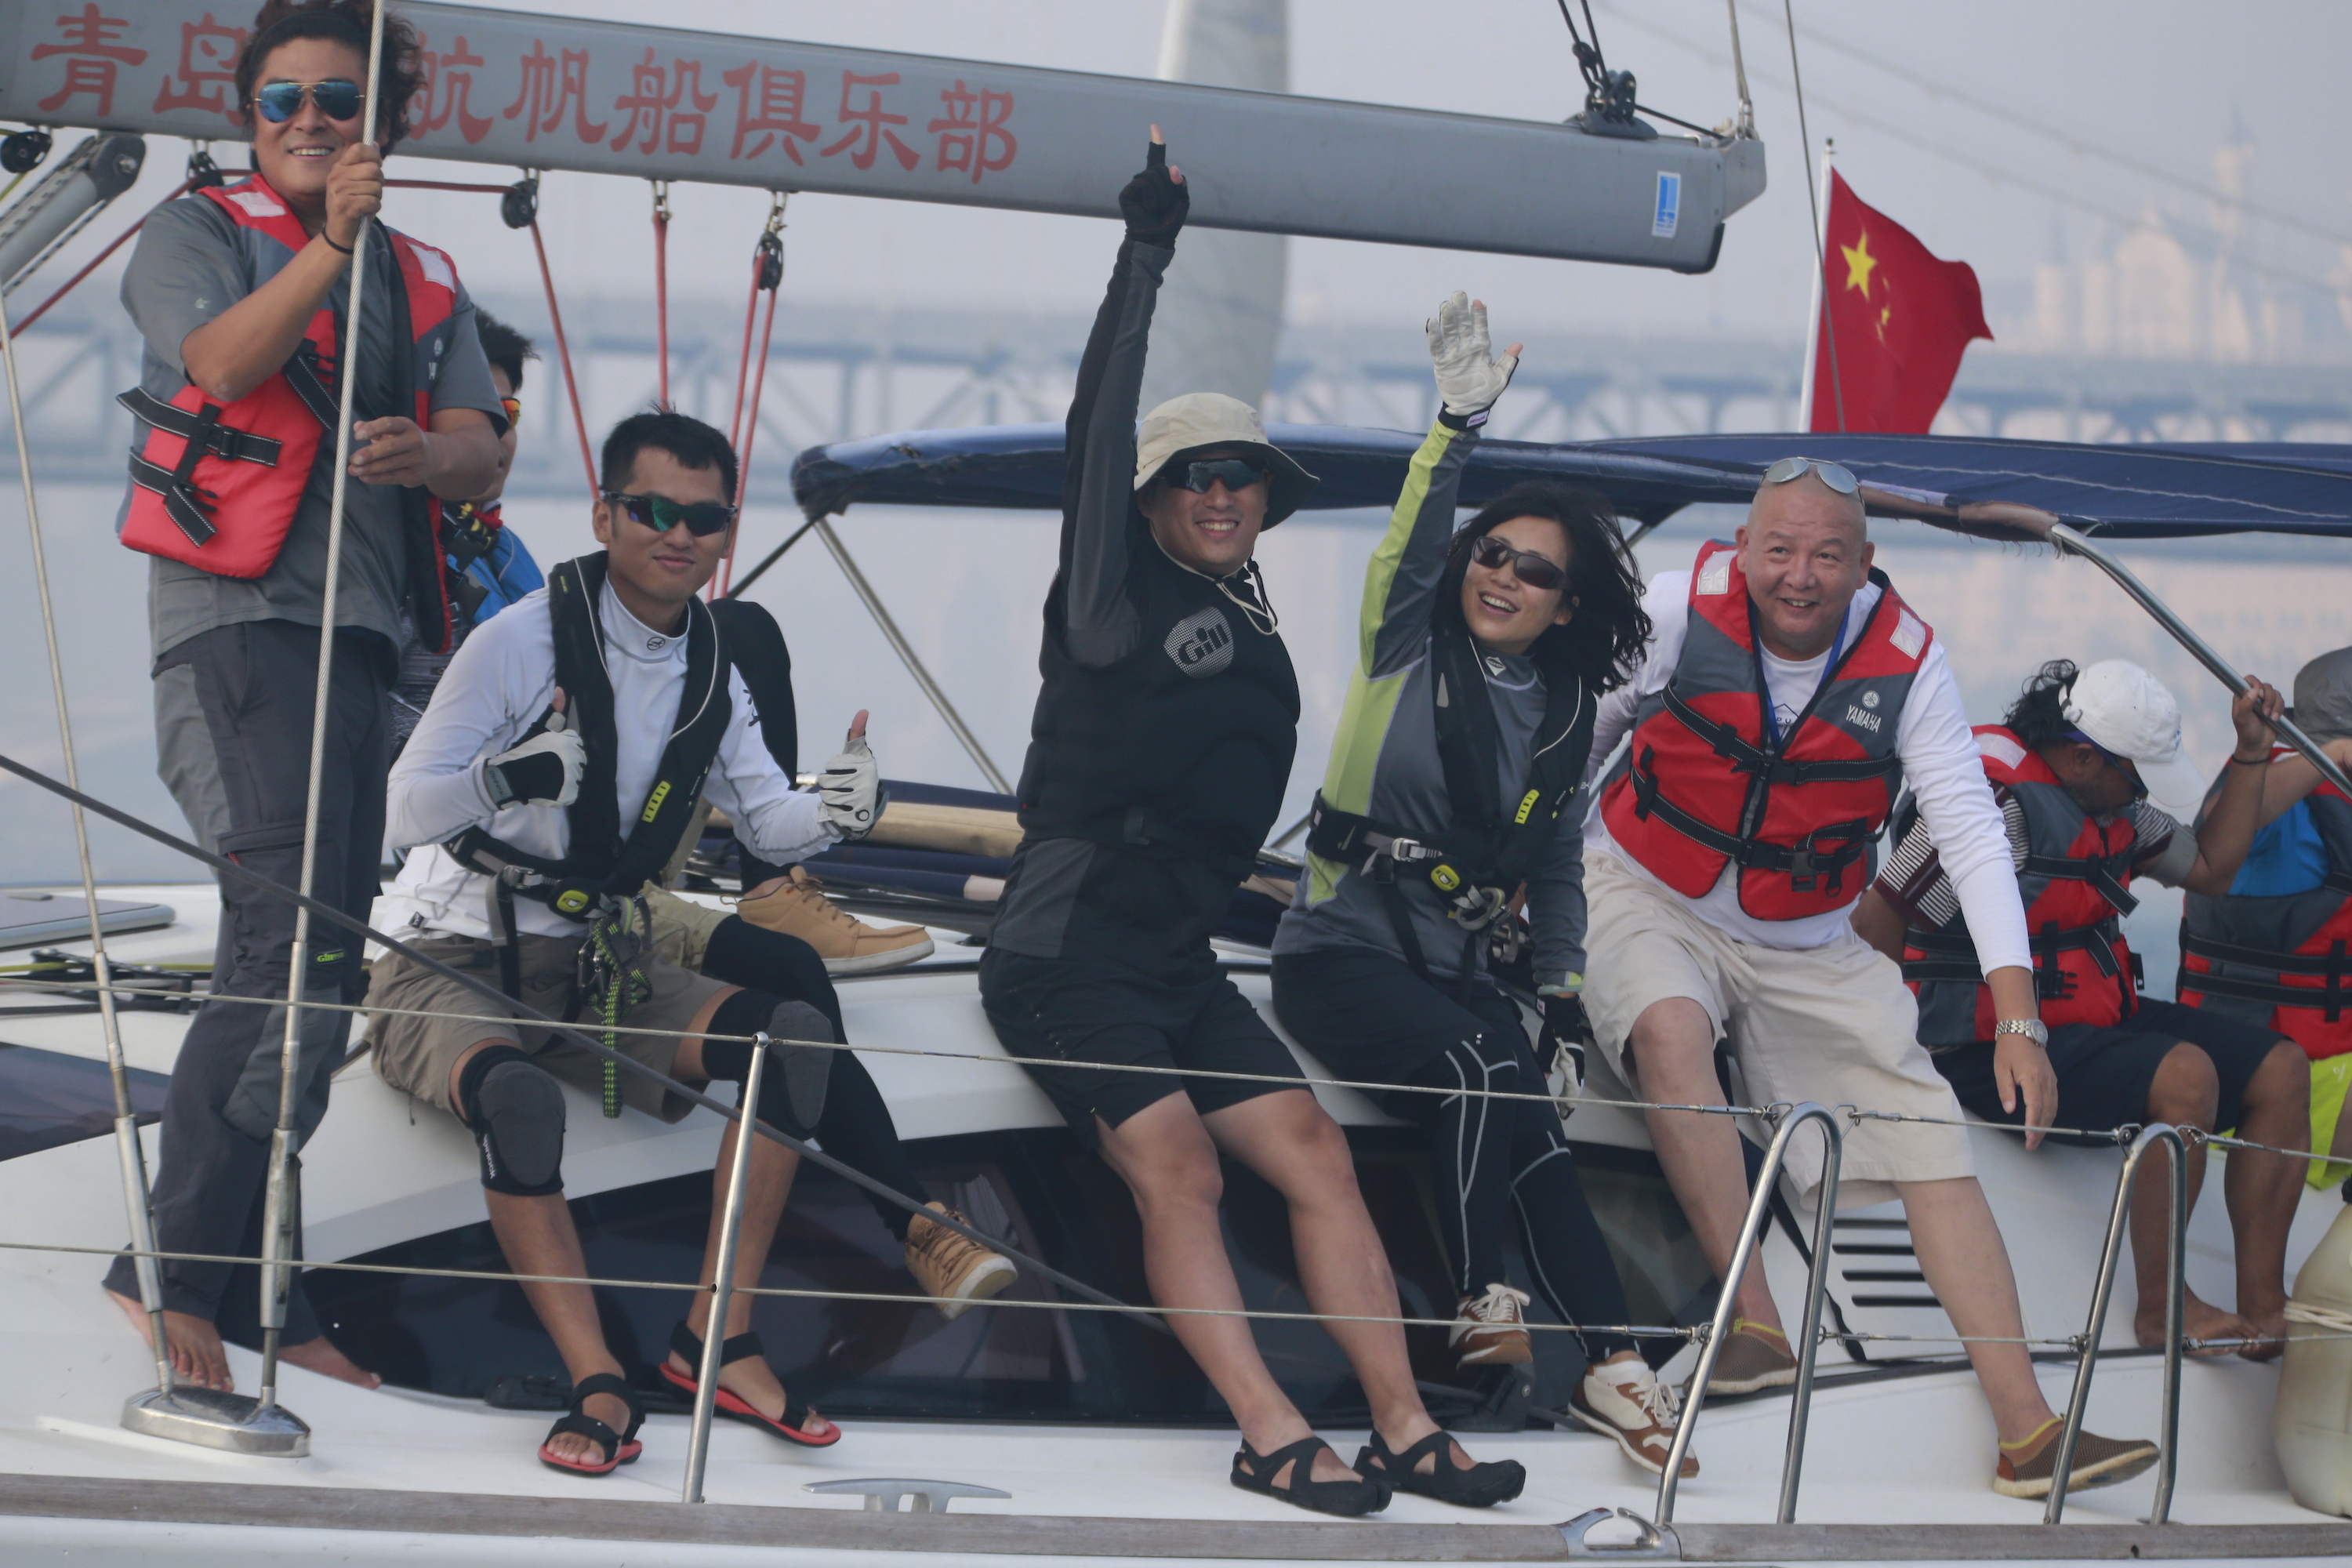 我要航海网千航帆船队2016环渤海杯帆船拉力赛_MG_7491.JPG